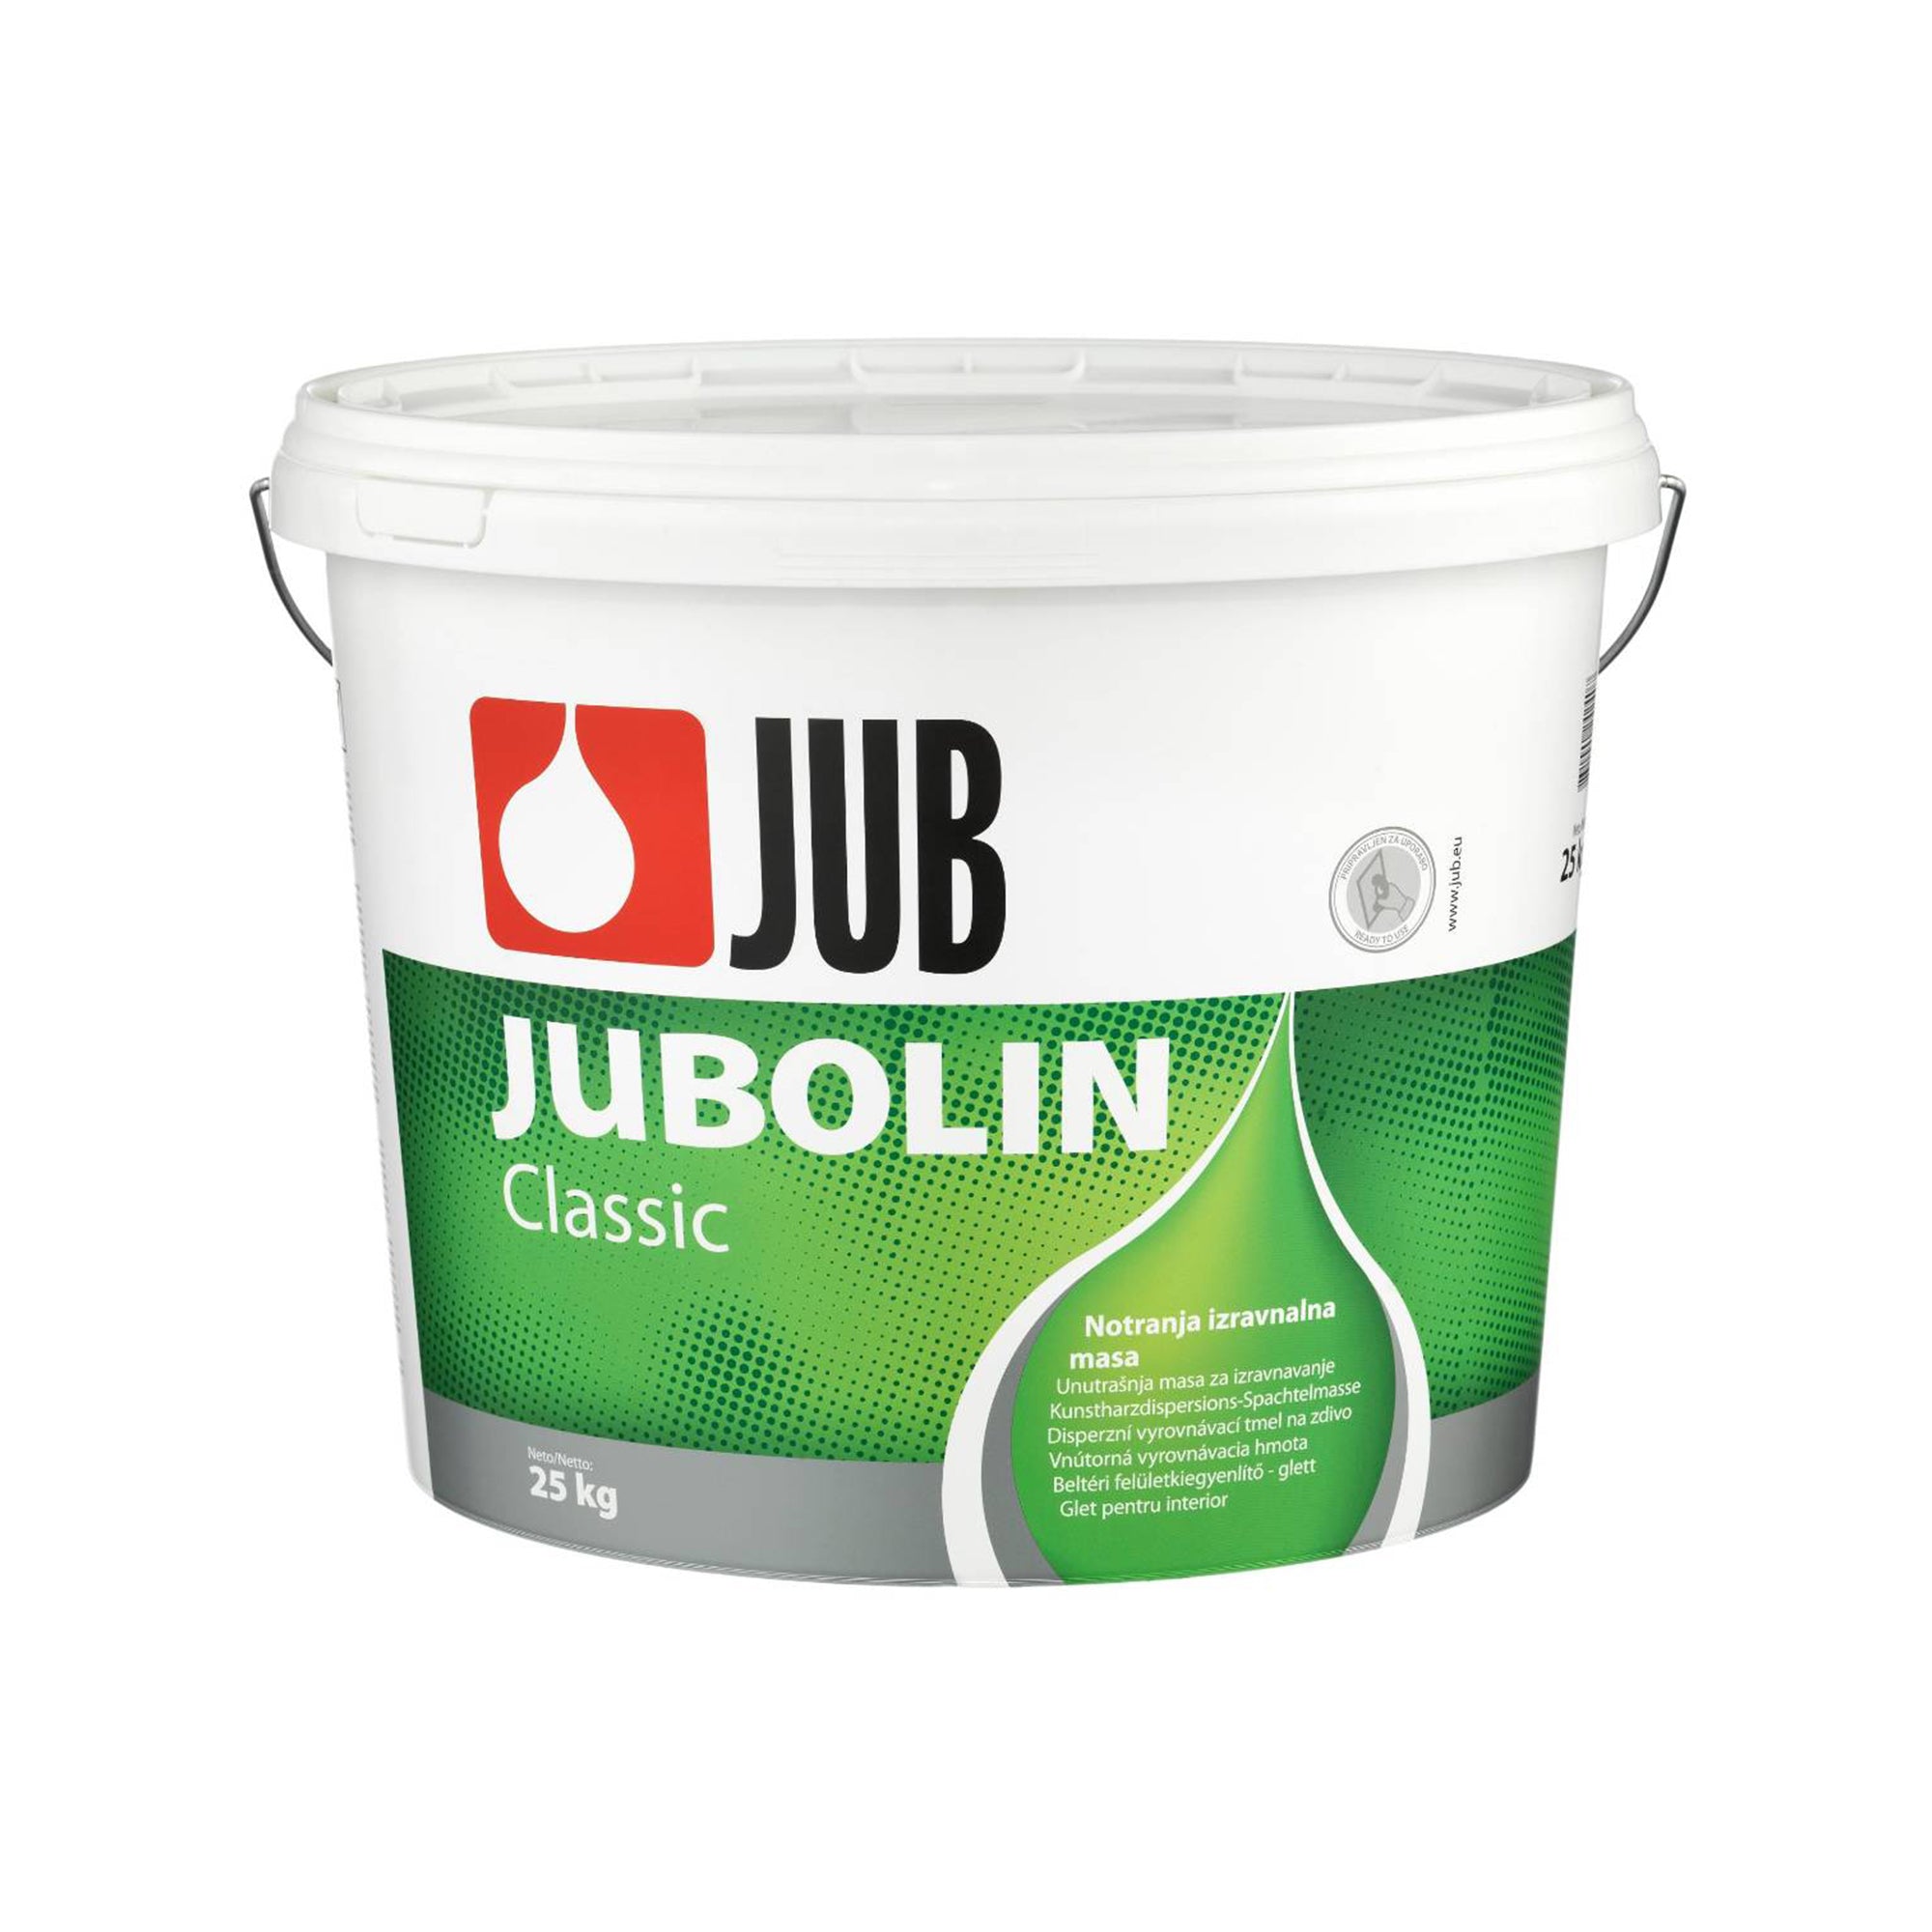 JUB JUBOLIN Classic vnútorná vyrovnávacia hmota 8 kg